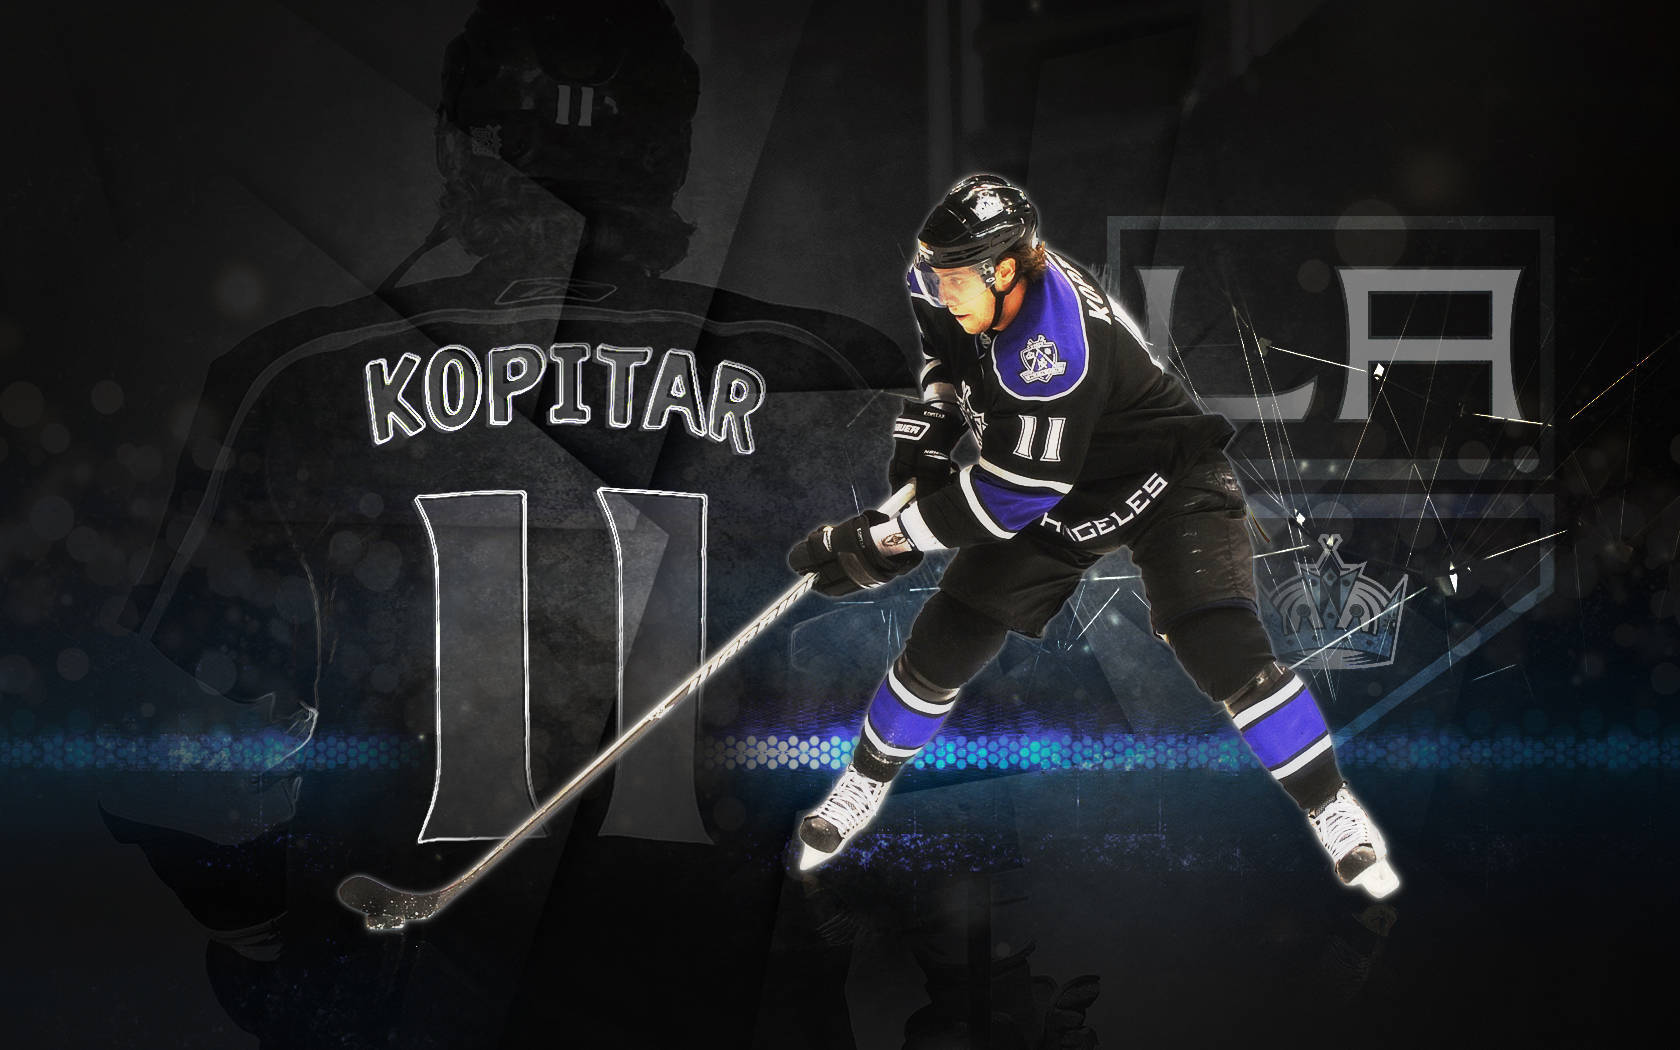 Slovenskaishockeyspelaren Anze Kopitar Nummer 11 Grafiskt Tryck. Wallpaper